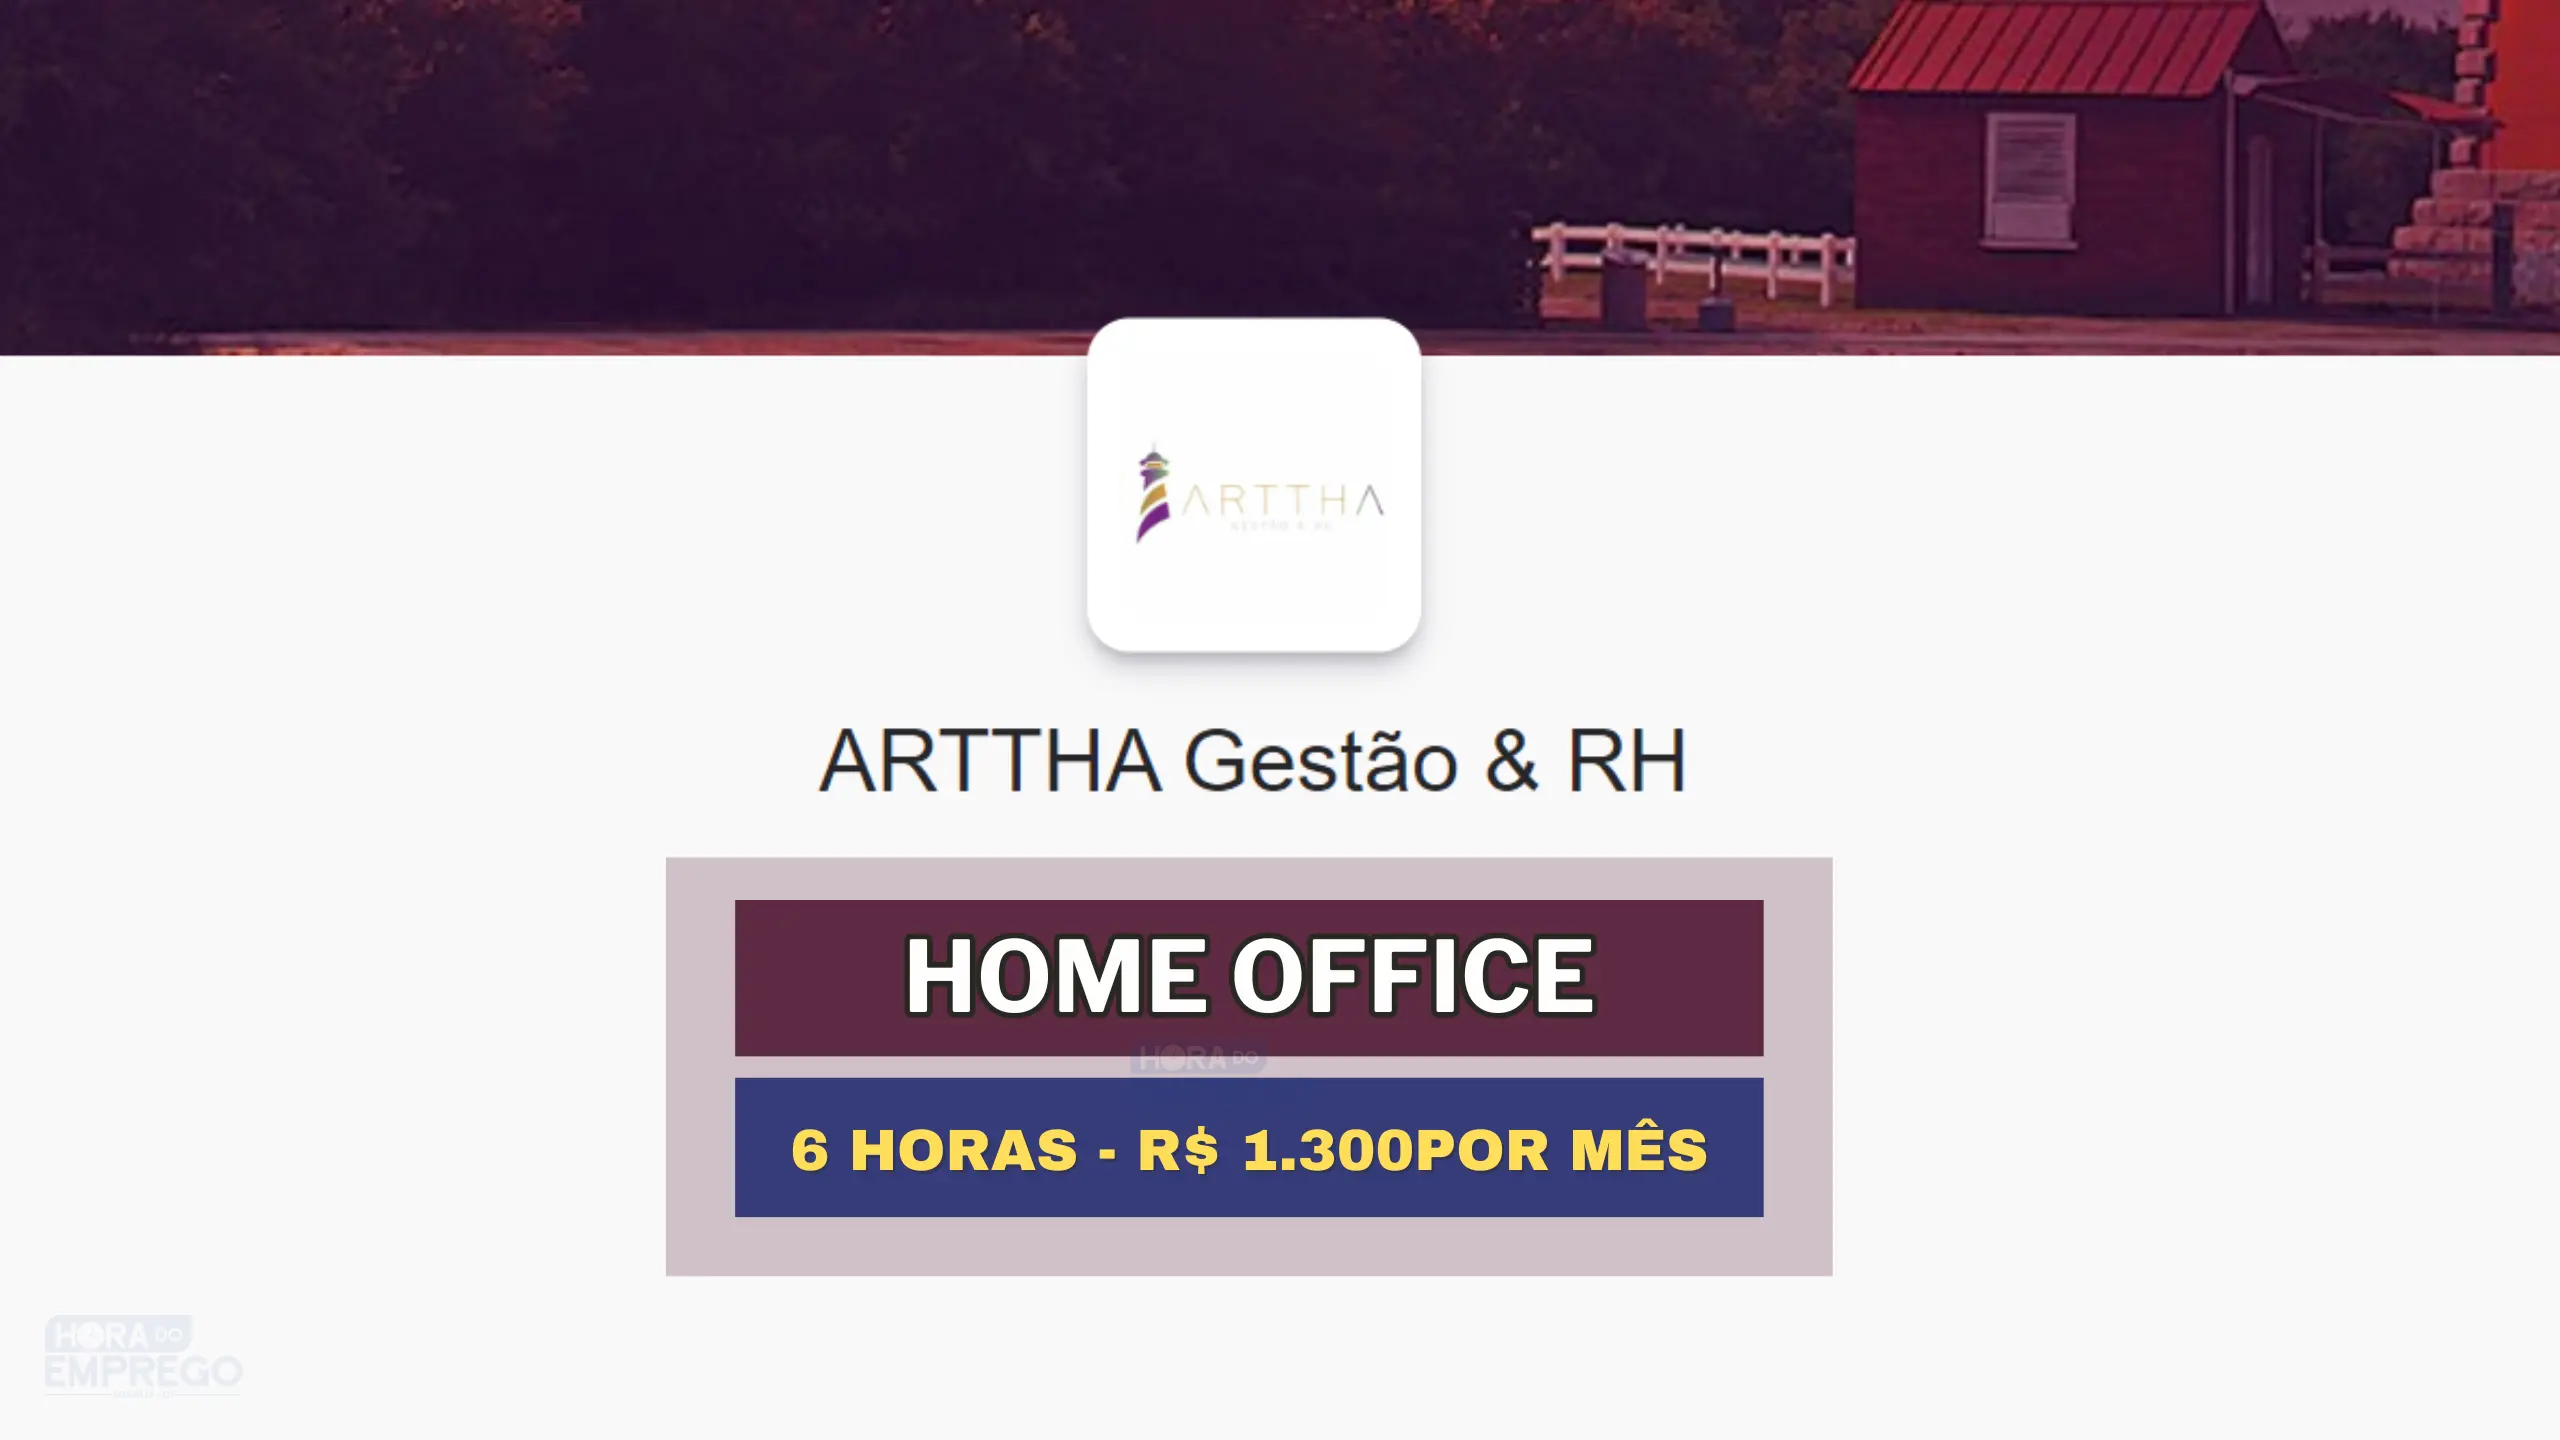 Empresa abre vaga HOME OFFICE para Assistente Comercial 06 horas por dia com Salário de R$ 1.300.00 por mês